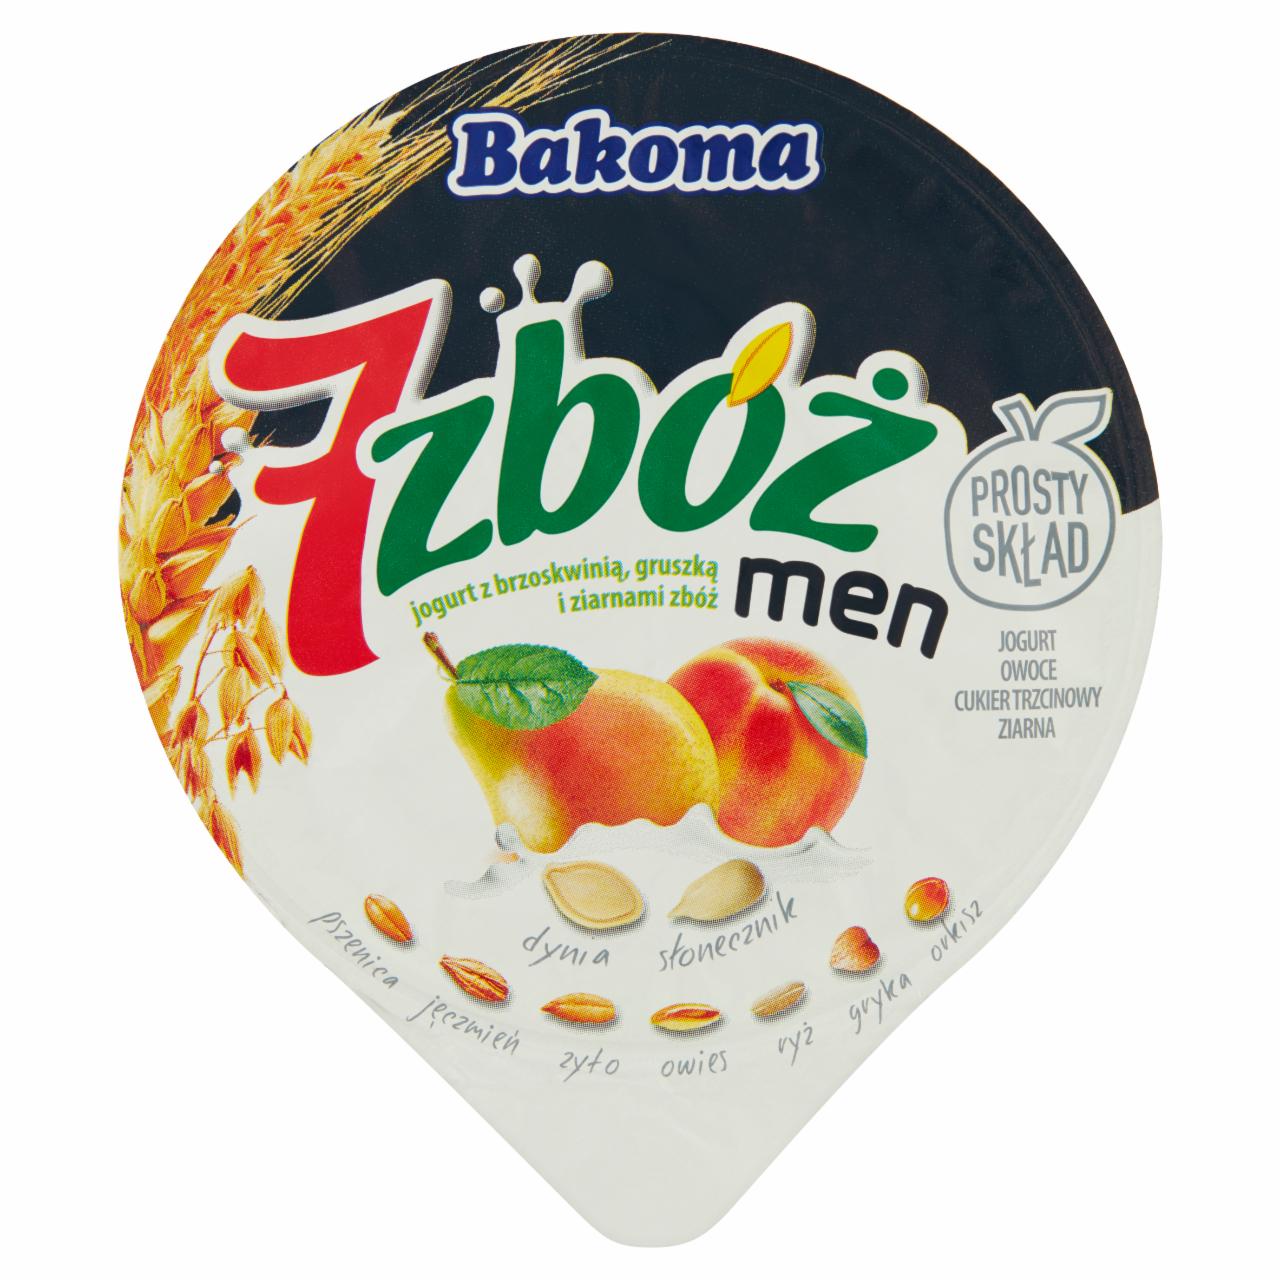 Photo - Bakoma 7 zbóż men Yoghurt with Peach Pear and Cereal 300 g